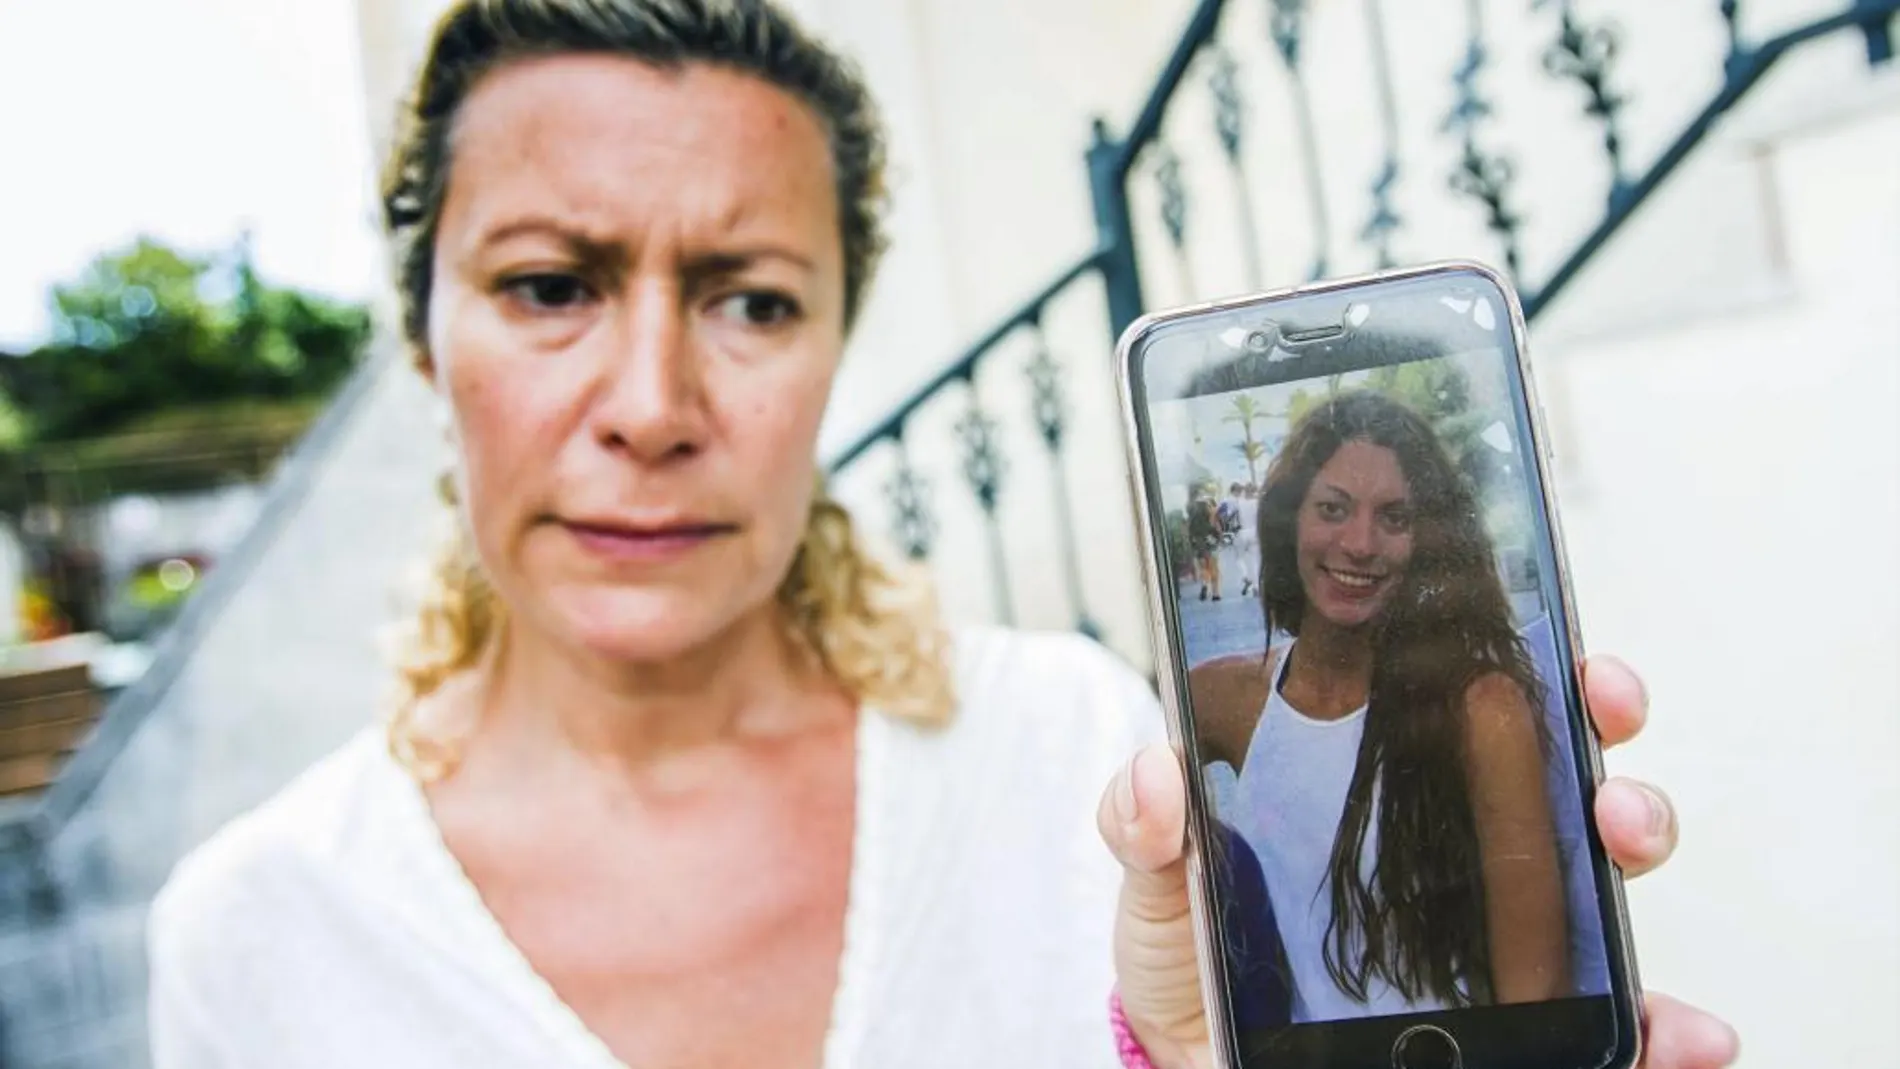 La madre de la joven Diana María Quer López-Pinel, de 18 años, que se encuentra desaparecida desde el pasado día 22 de este mes